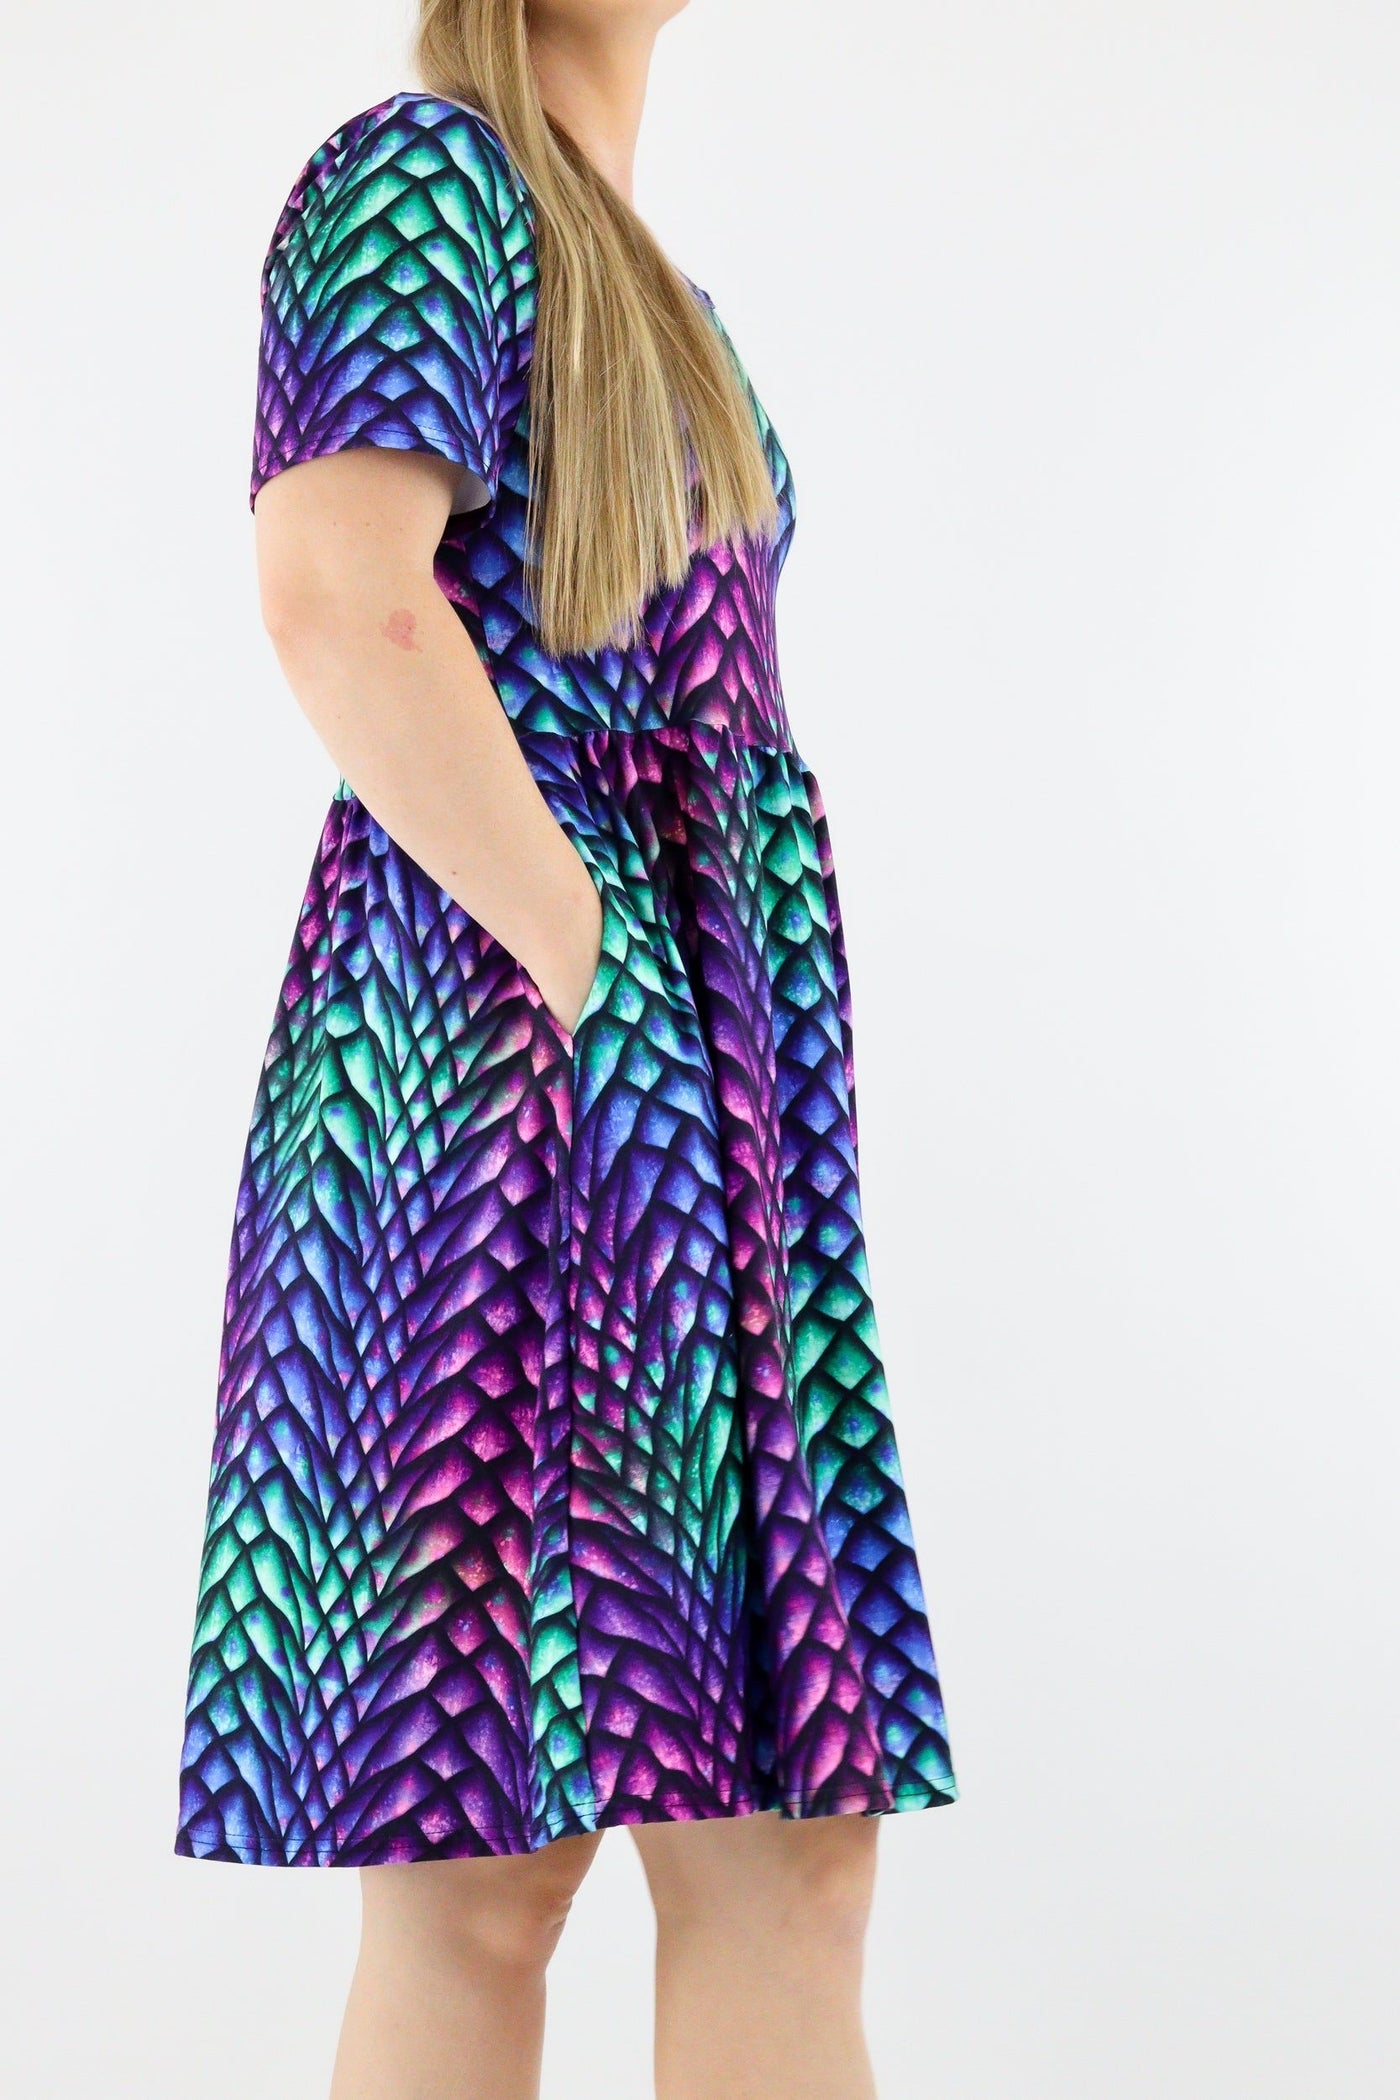 Radiant Dragon - Short Sleeve Skater Dress - Knee Length - Side Pockets Knee Length Skater Dress Pawlie   